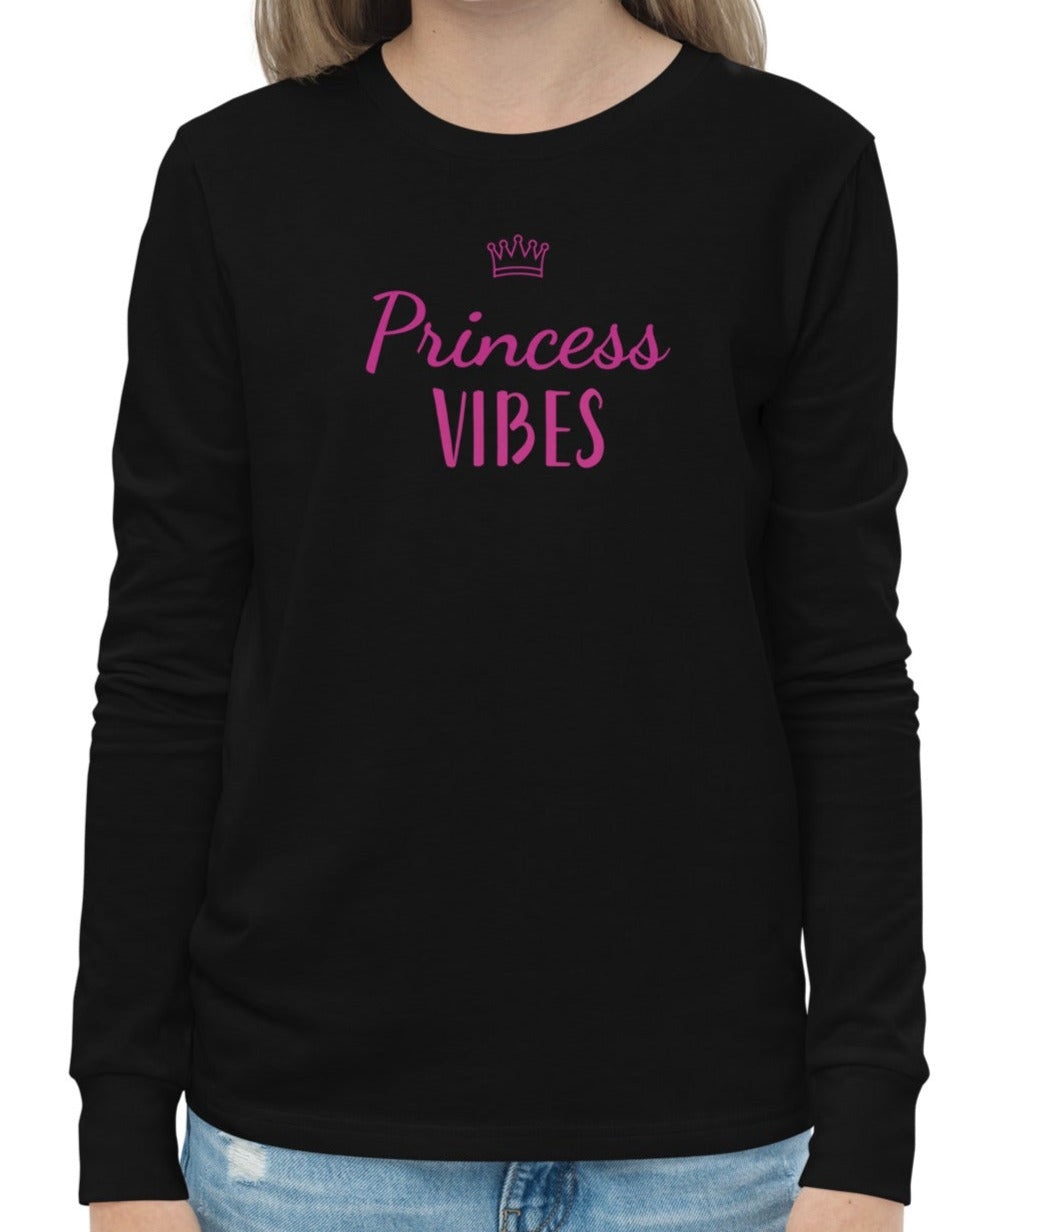 Princess Vibes Cotton Tee - On the Go with Princess O